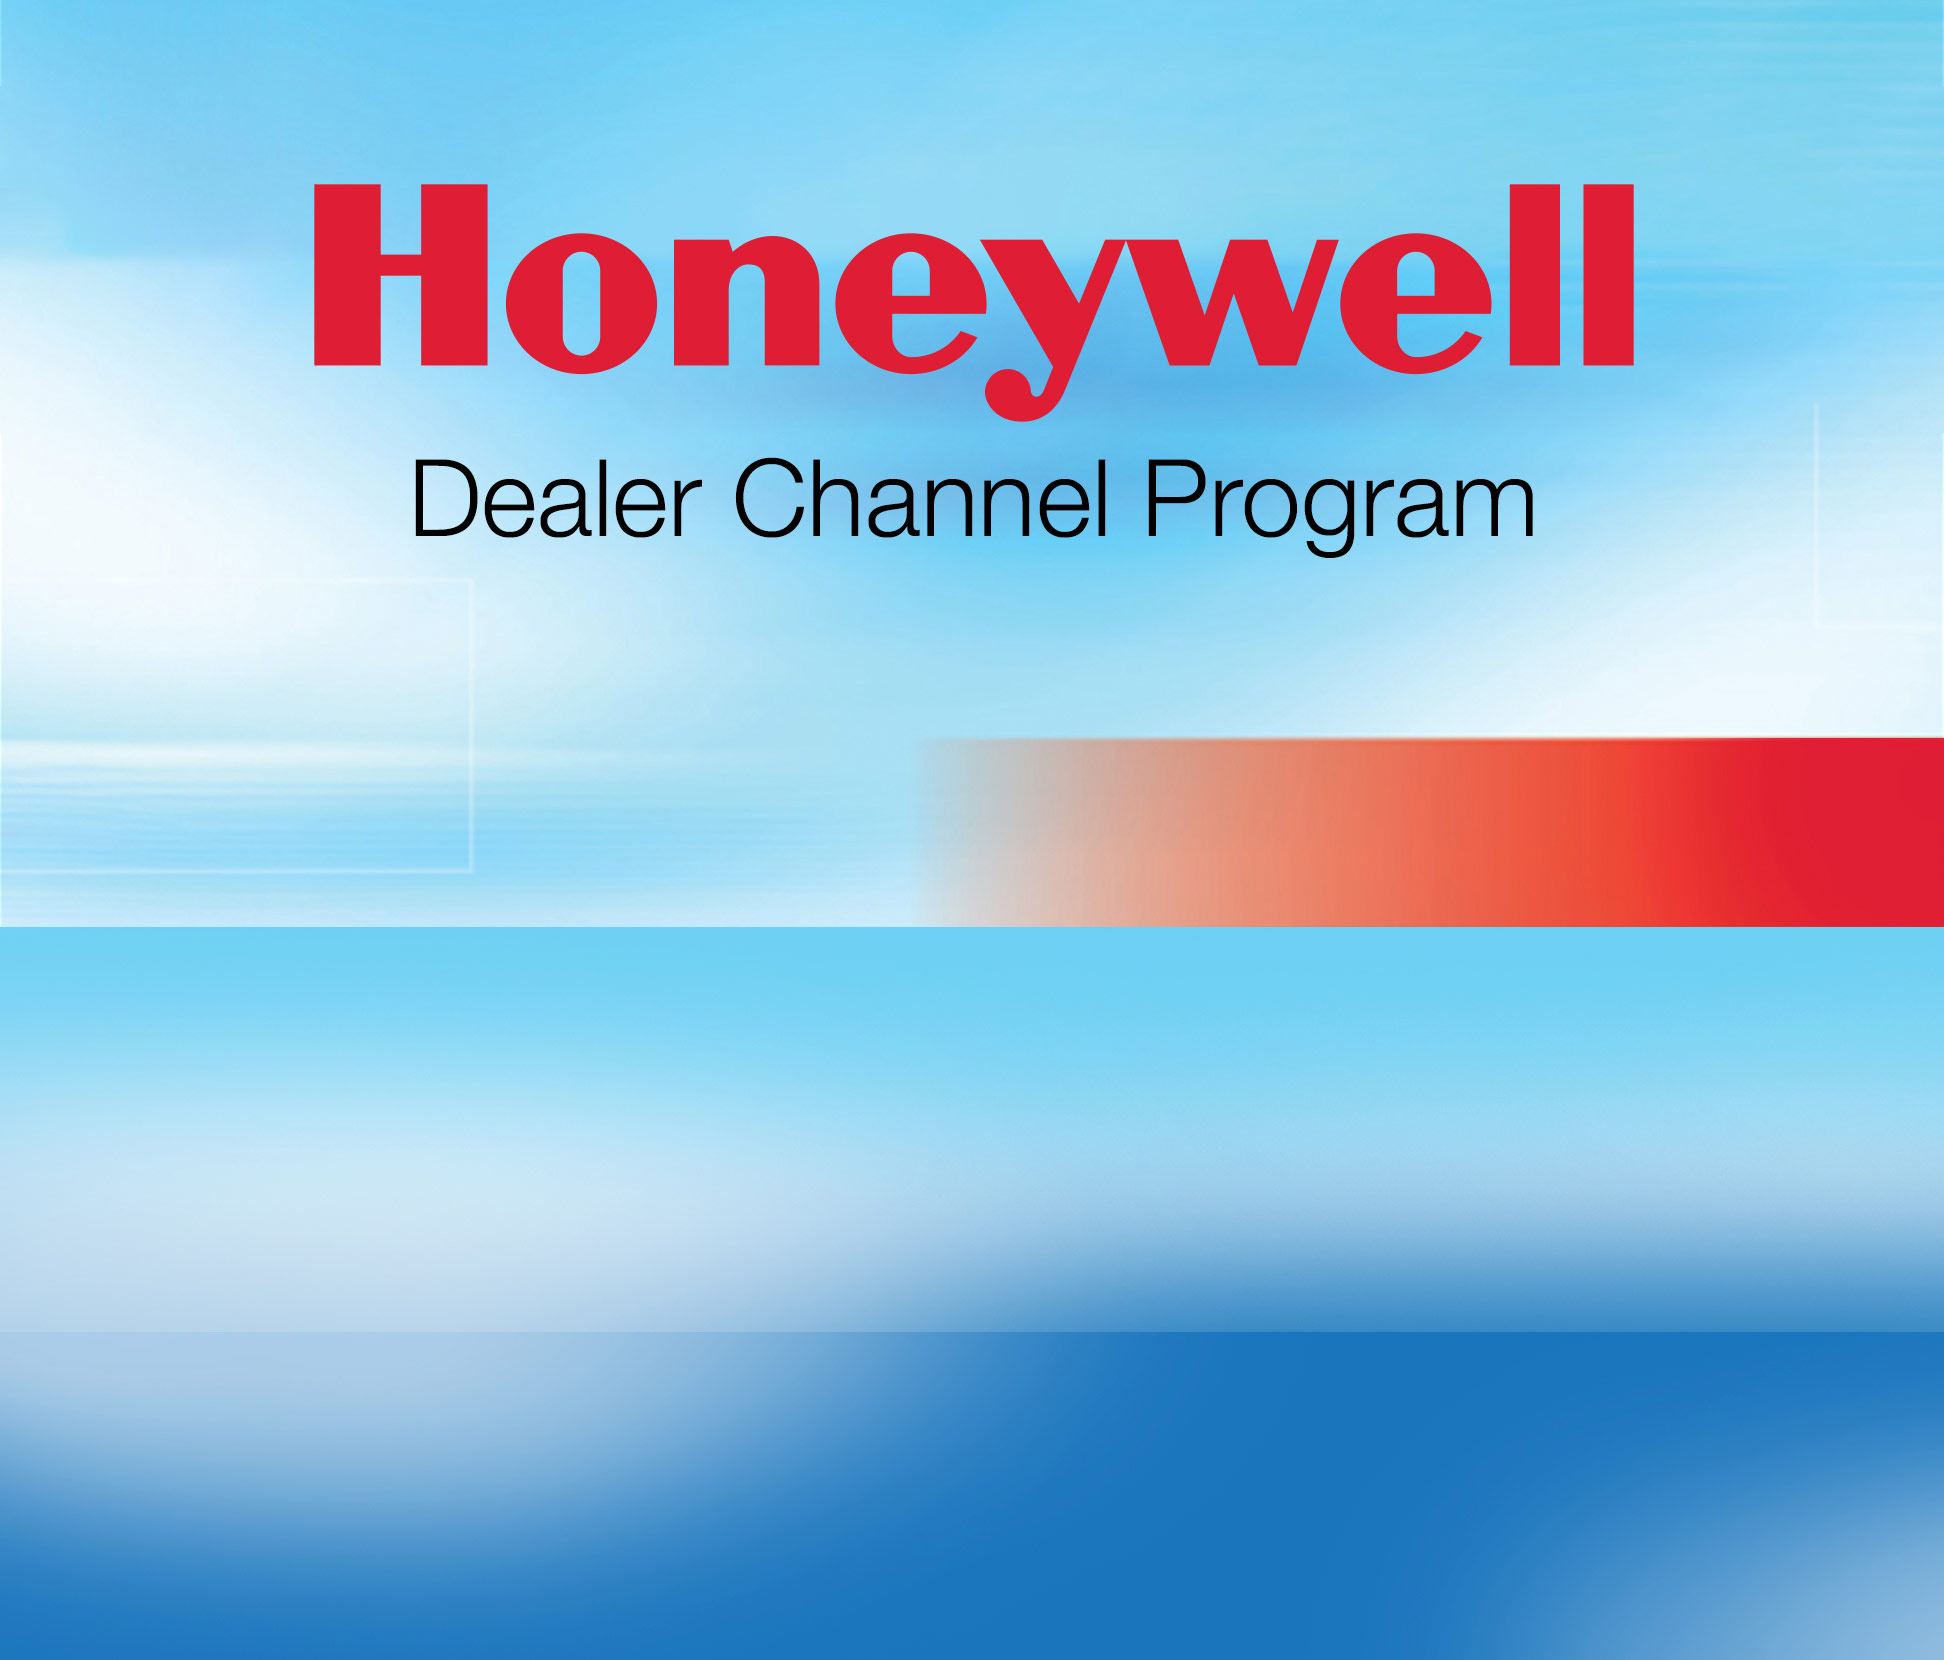 honeywell dealer channel program